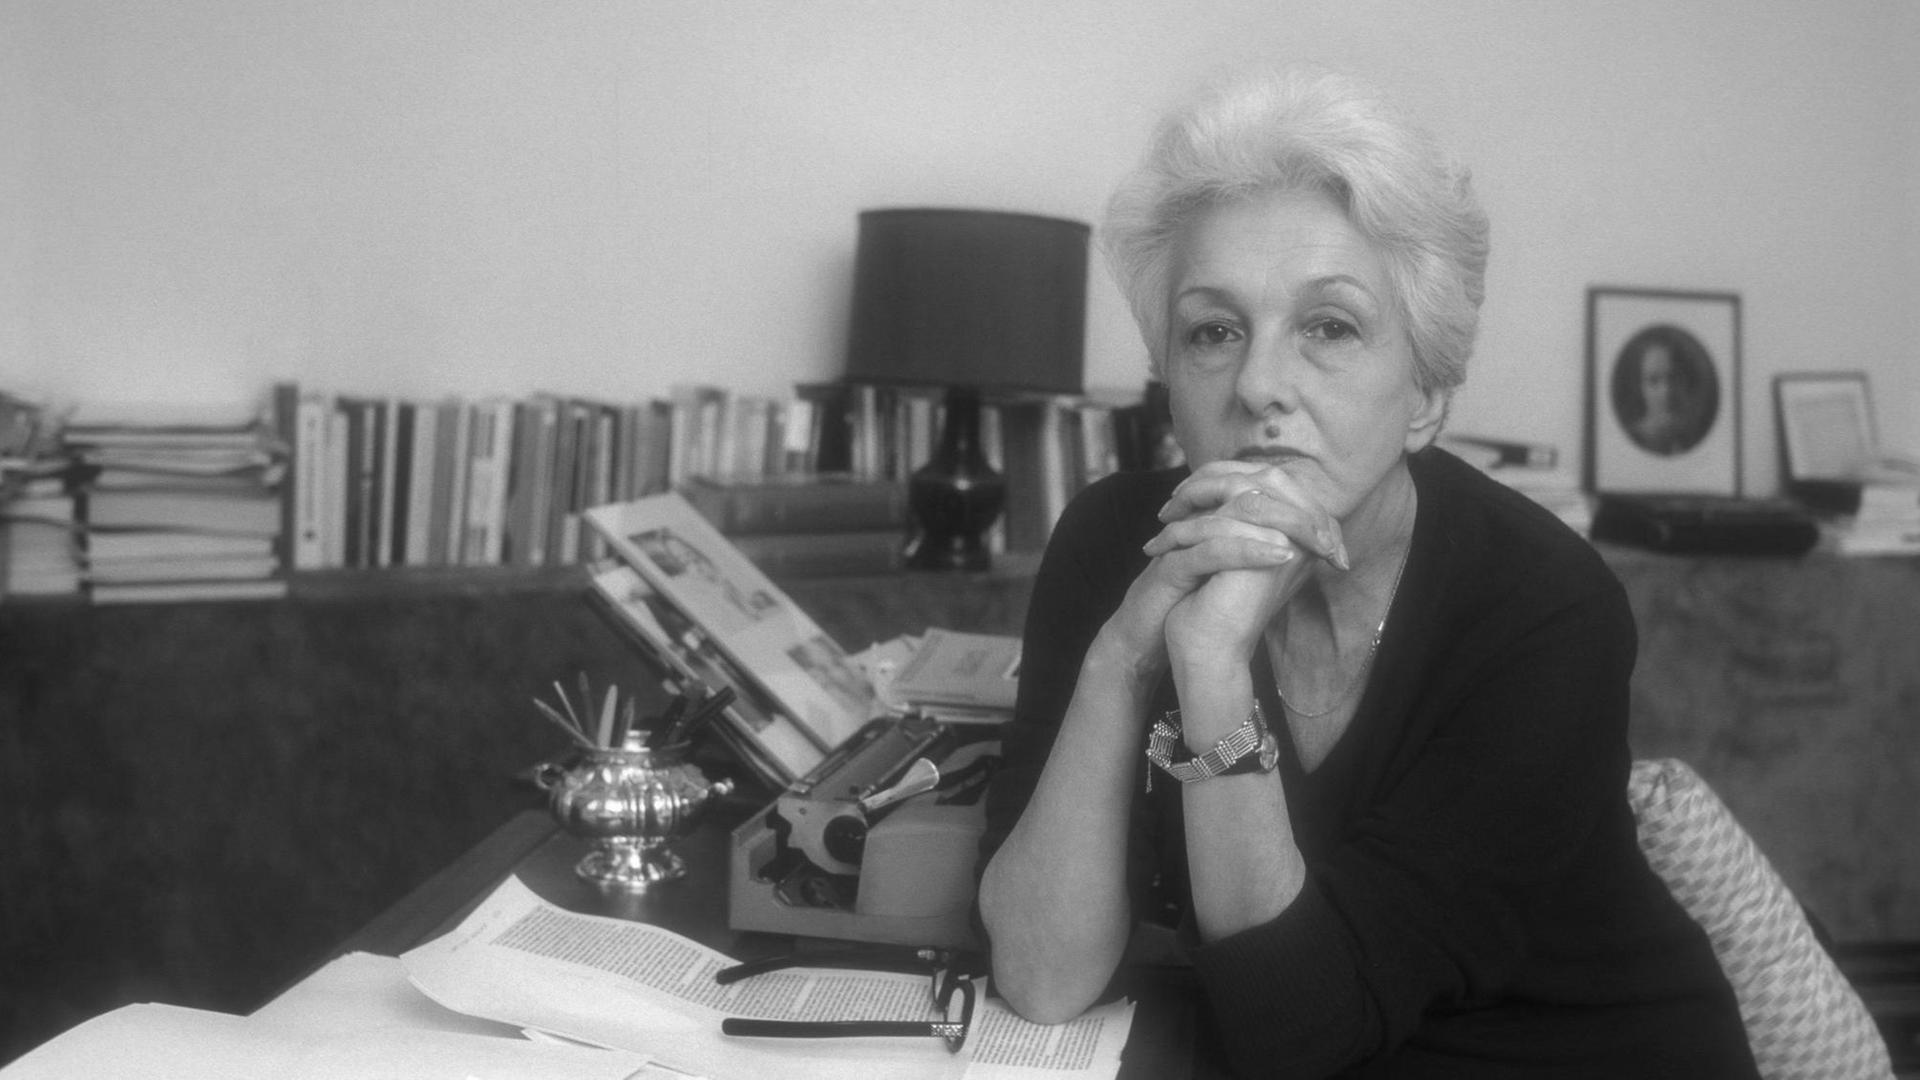 Die italienische Intellektuelle und Publizistin Rossana Rossanda in ihrer Wohnung in Rom (das geschätzte Aufnahmedatum ist 1987)